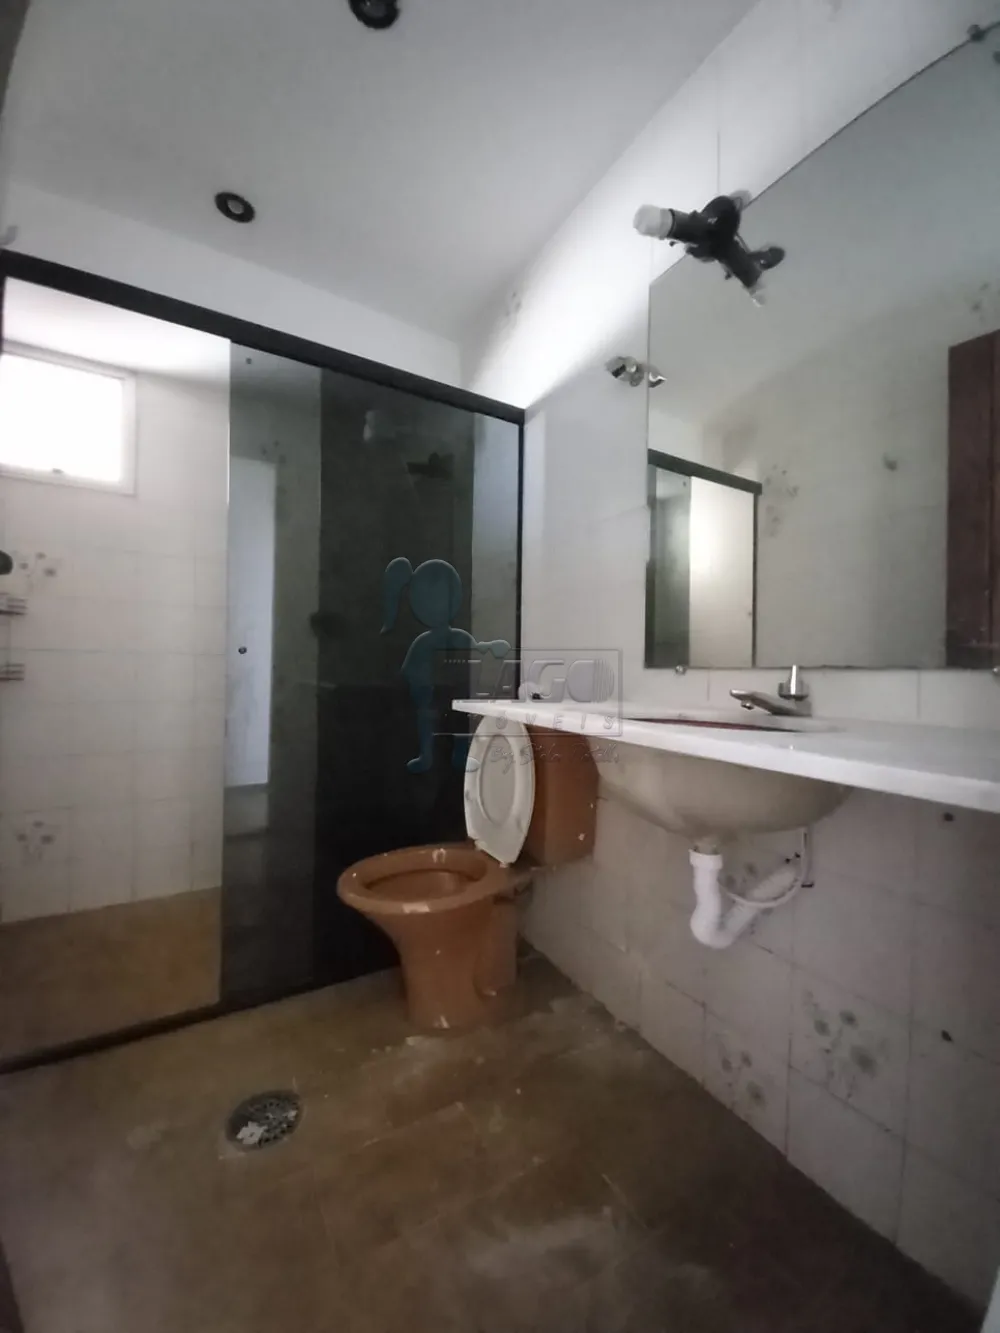 Alugar Apartamentos / Padrão em Ribeirão Preto R$ 2.500,00 - Foto 13